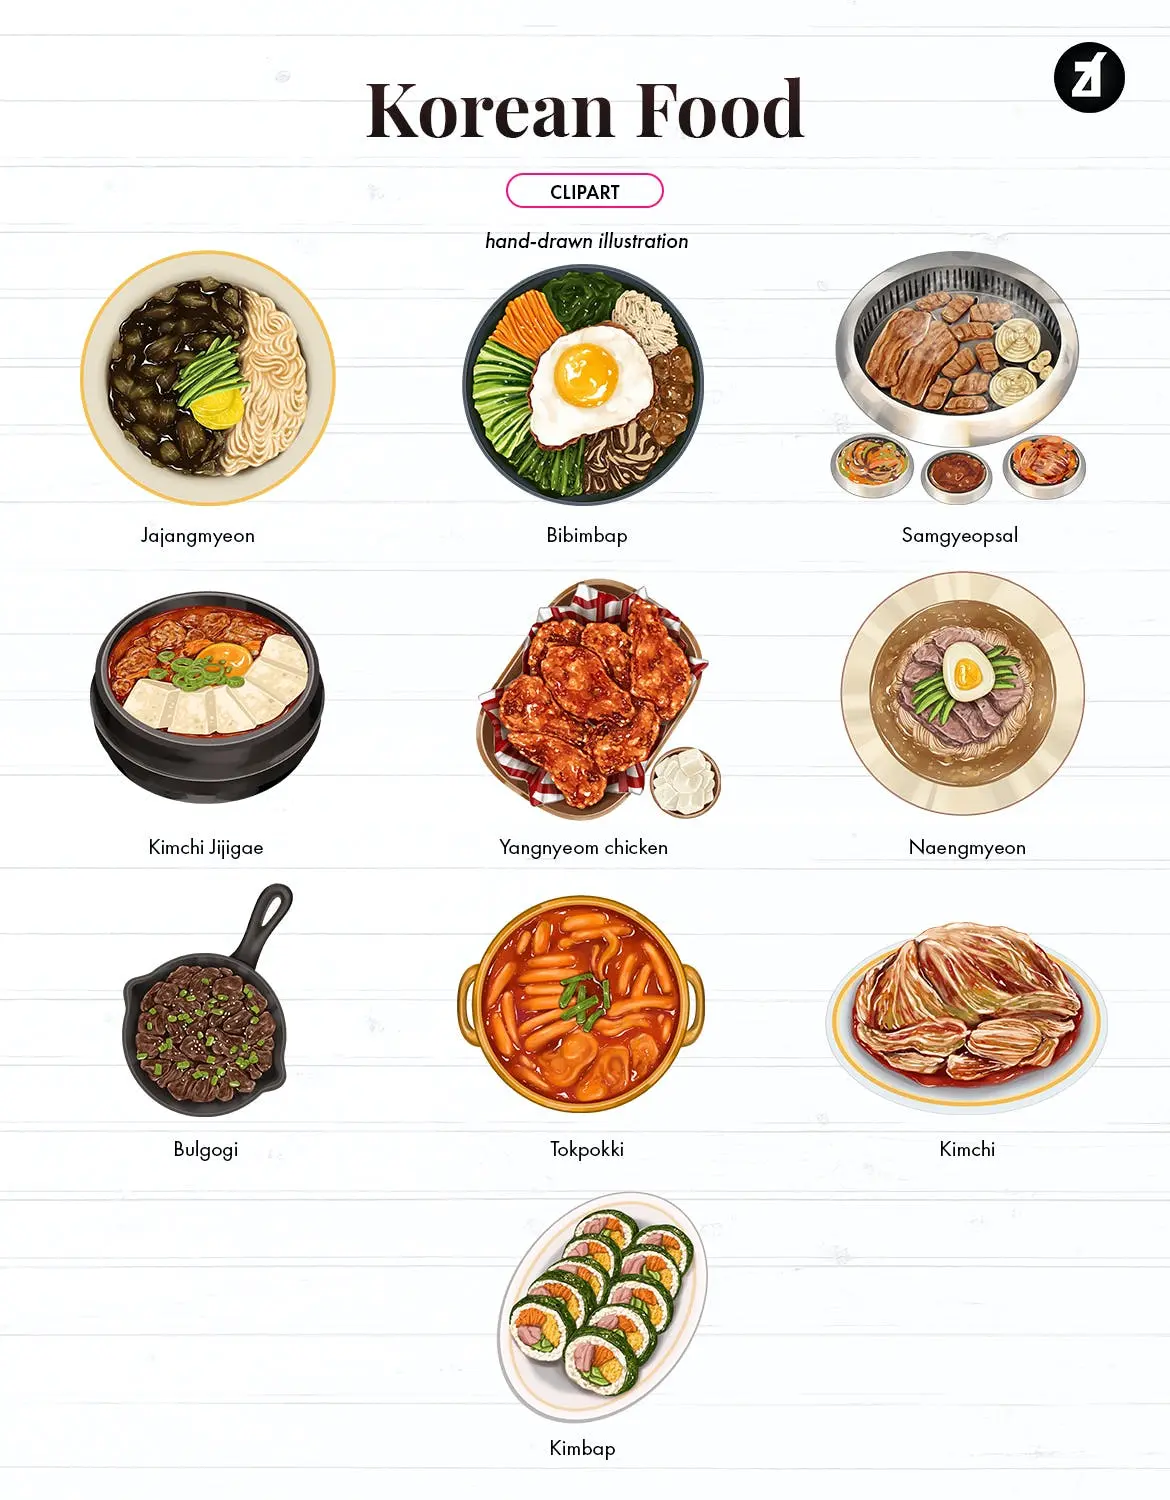 时尚高端手绘韩国食品插画背景底纹纹理集合插图1